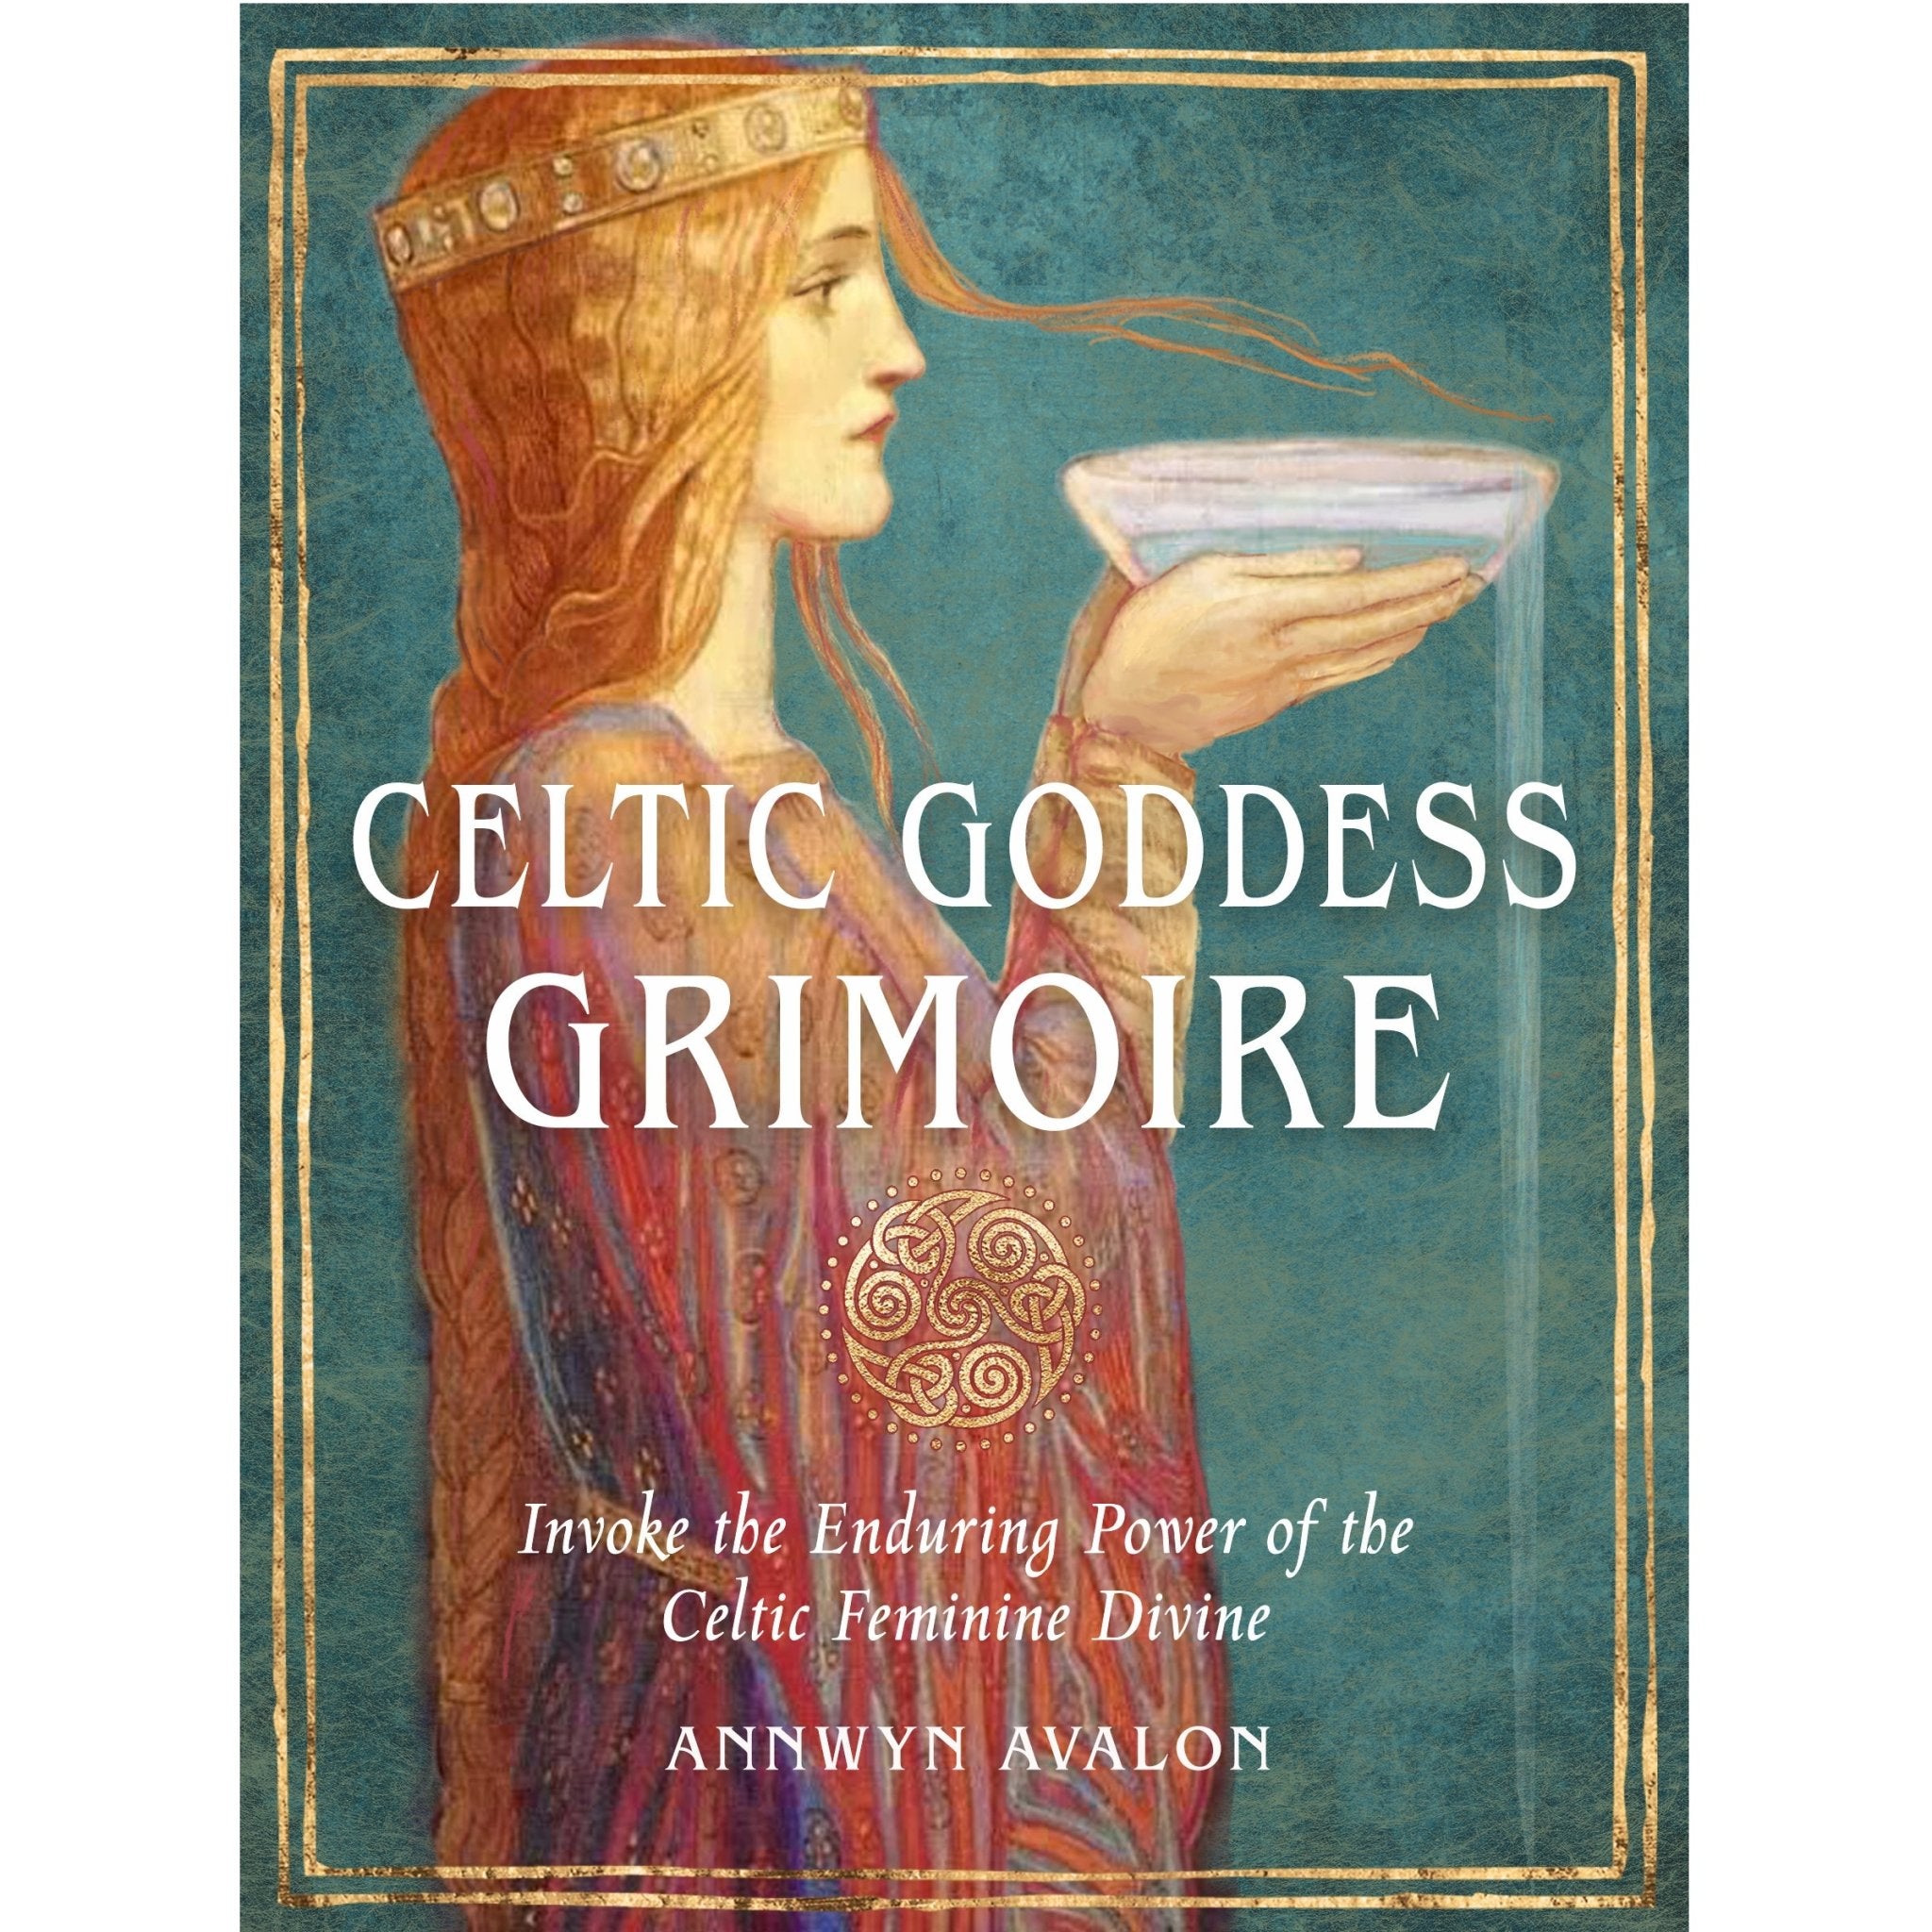 Celtic Goddess Grimoire - 13 Moons